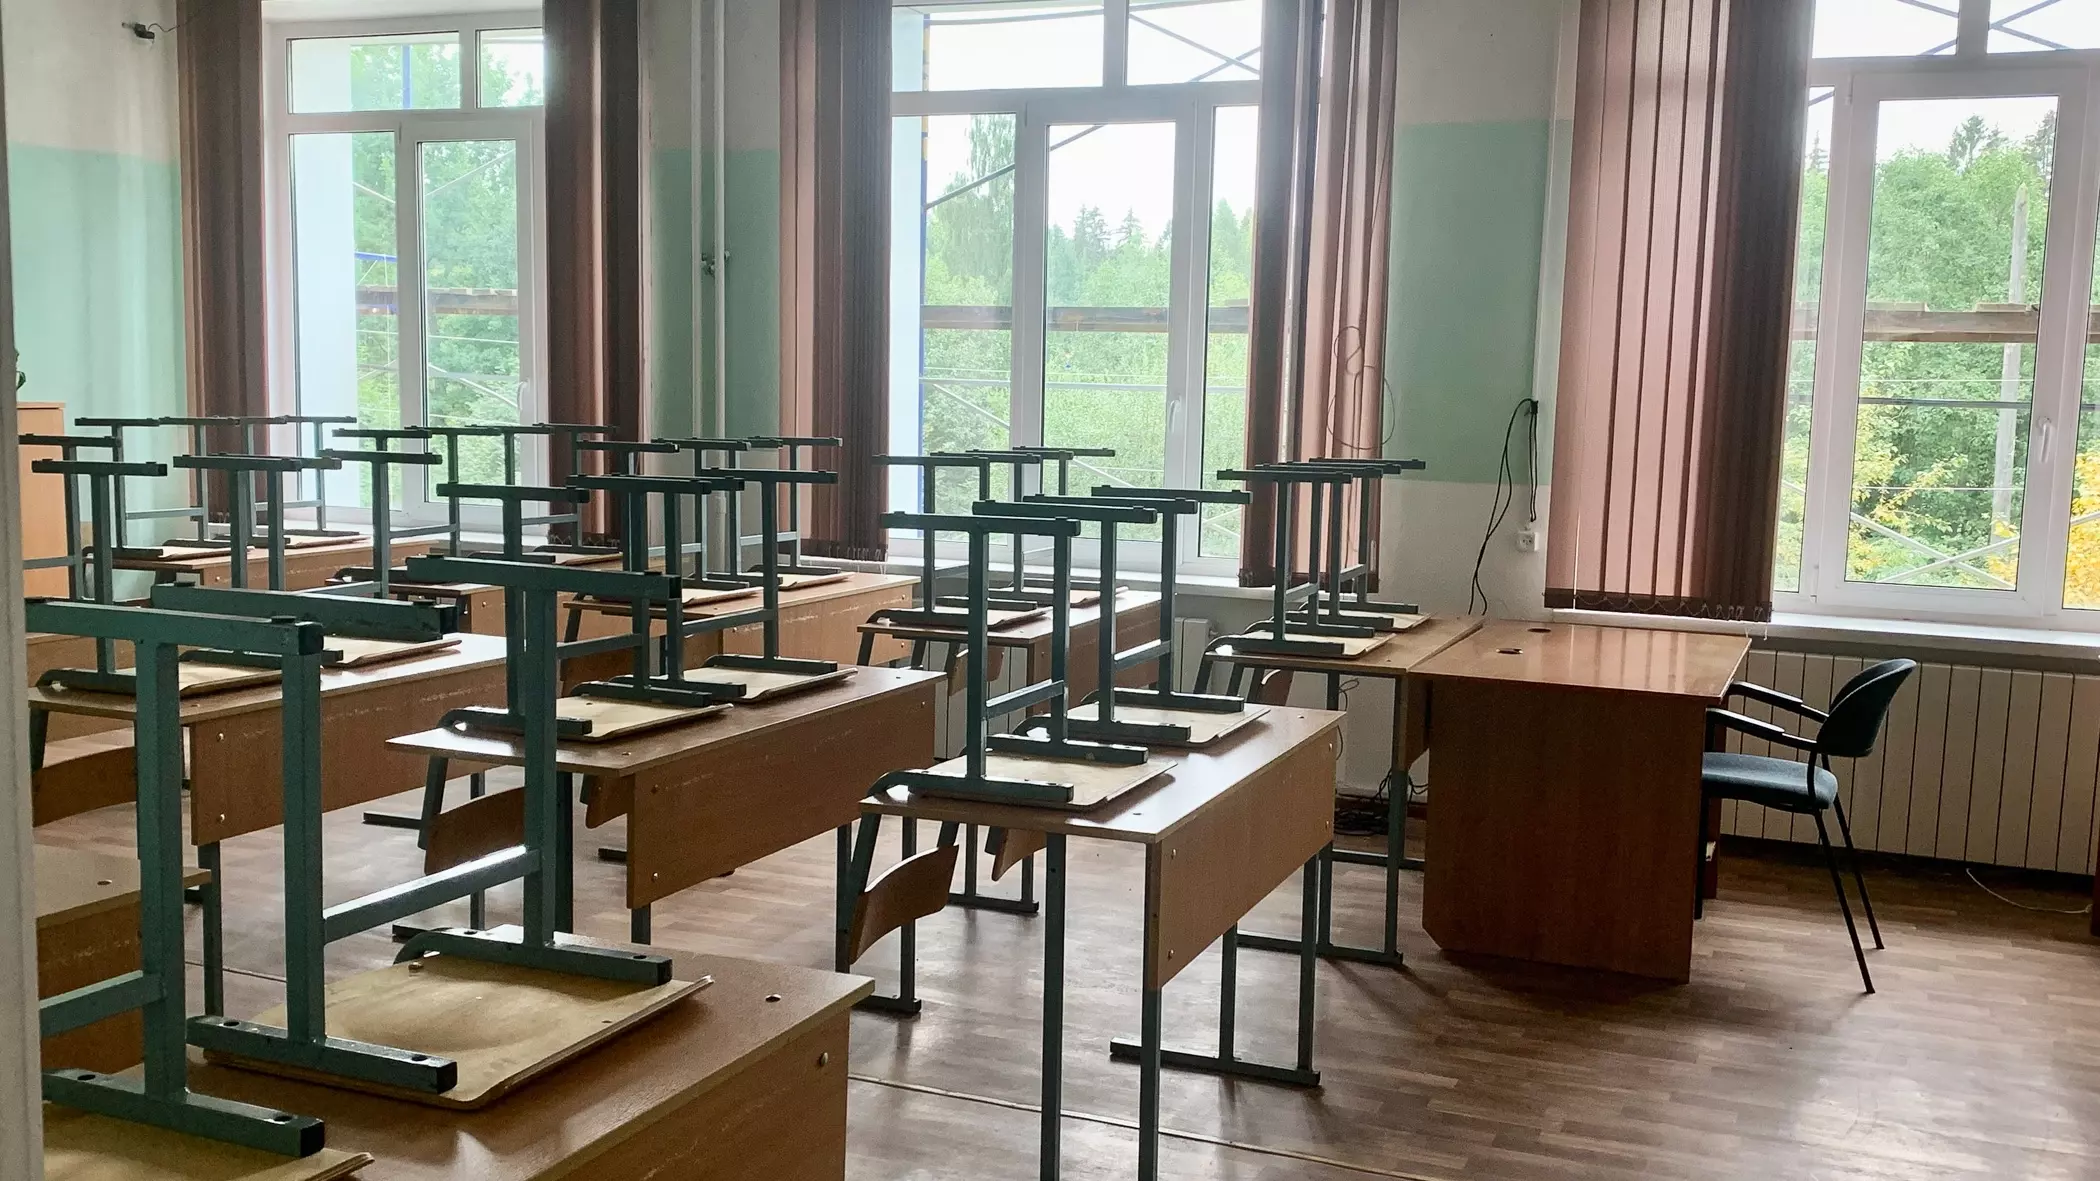 Ученице третьего класса в Новосибирске сделали замечание за питье воды на уроке